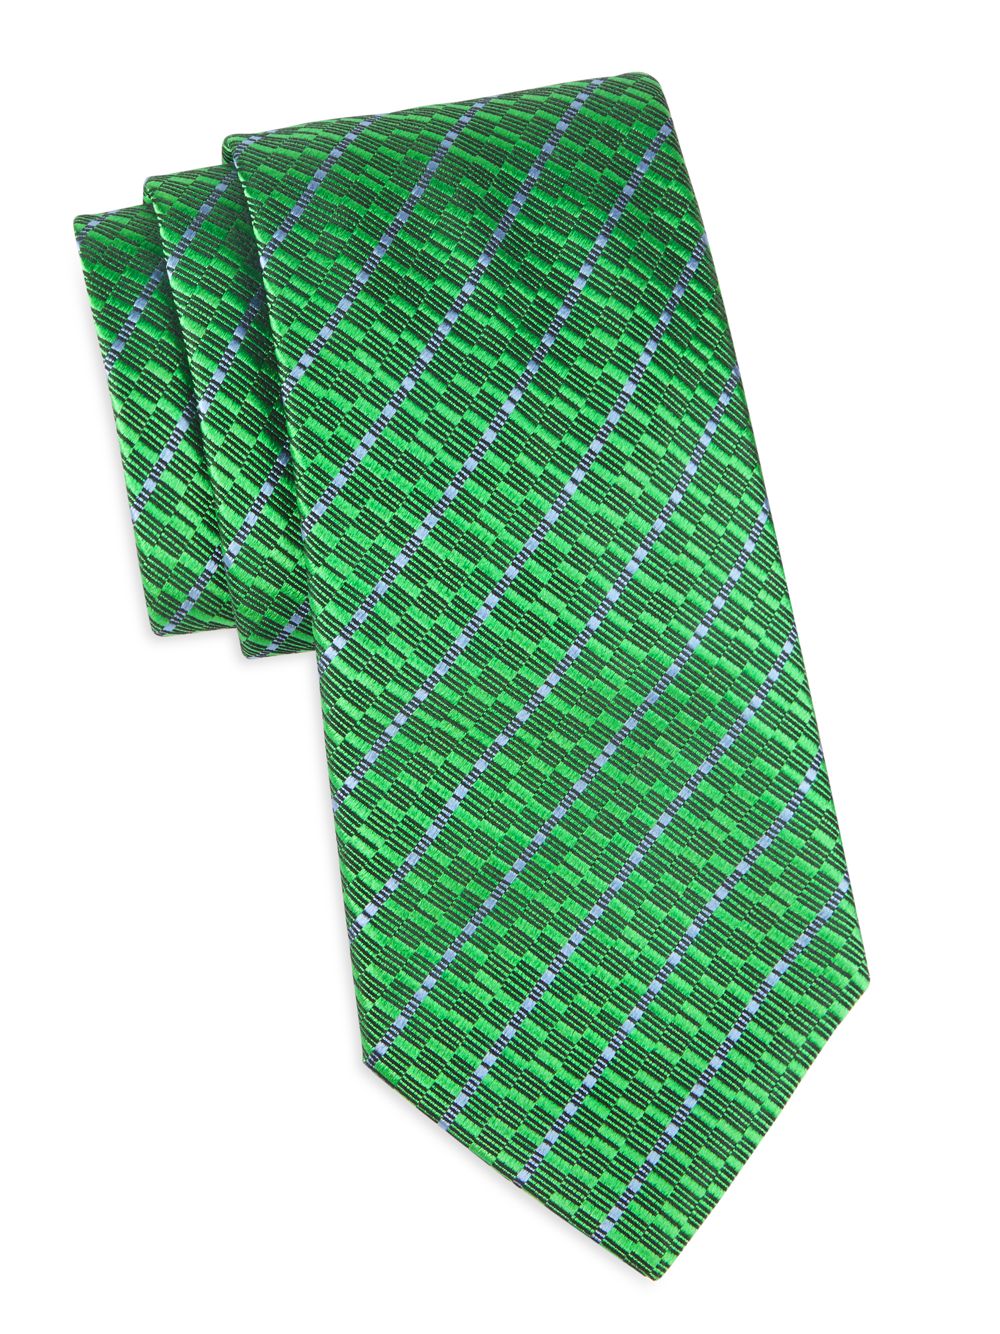 Шелковый жаккардовый галстук в полоску Charvet, зеленый галстук в полоску зеленый